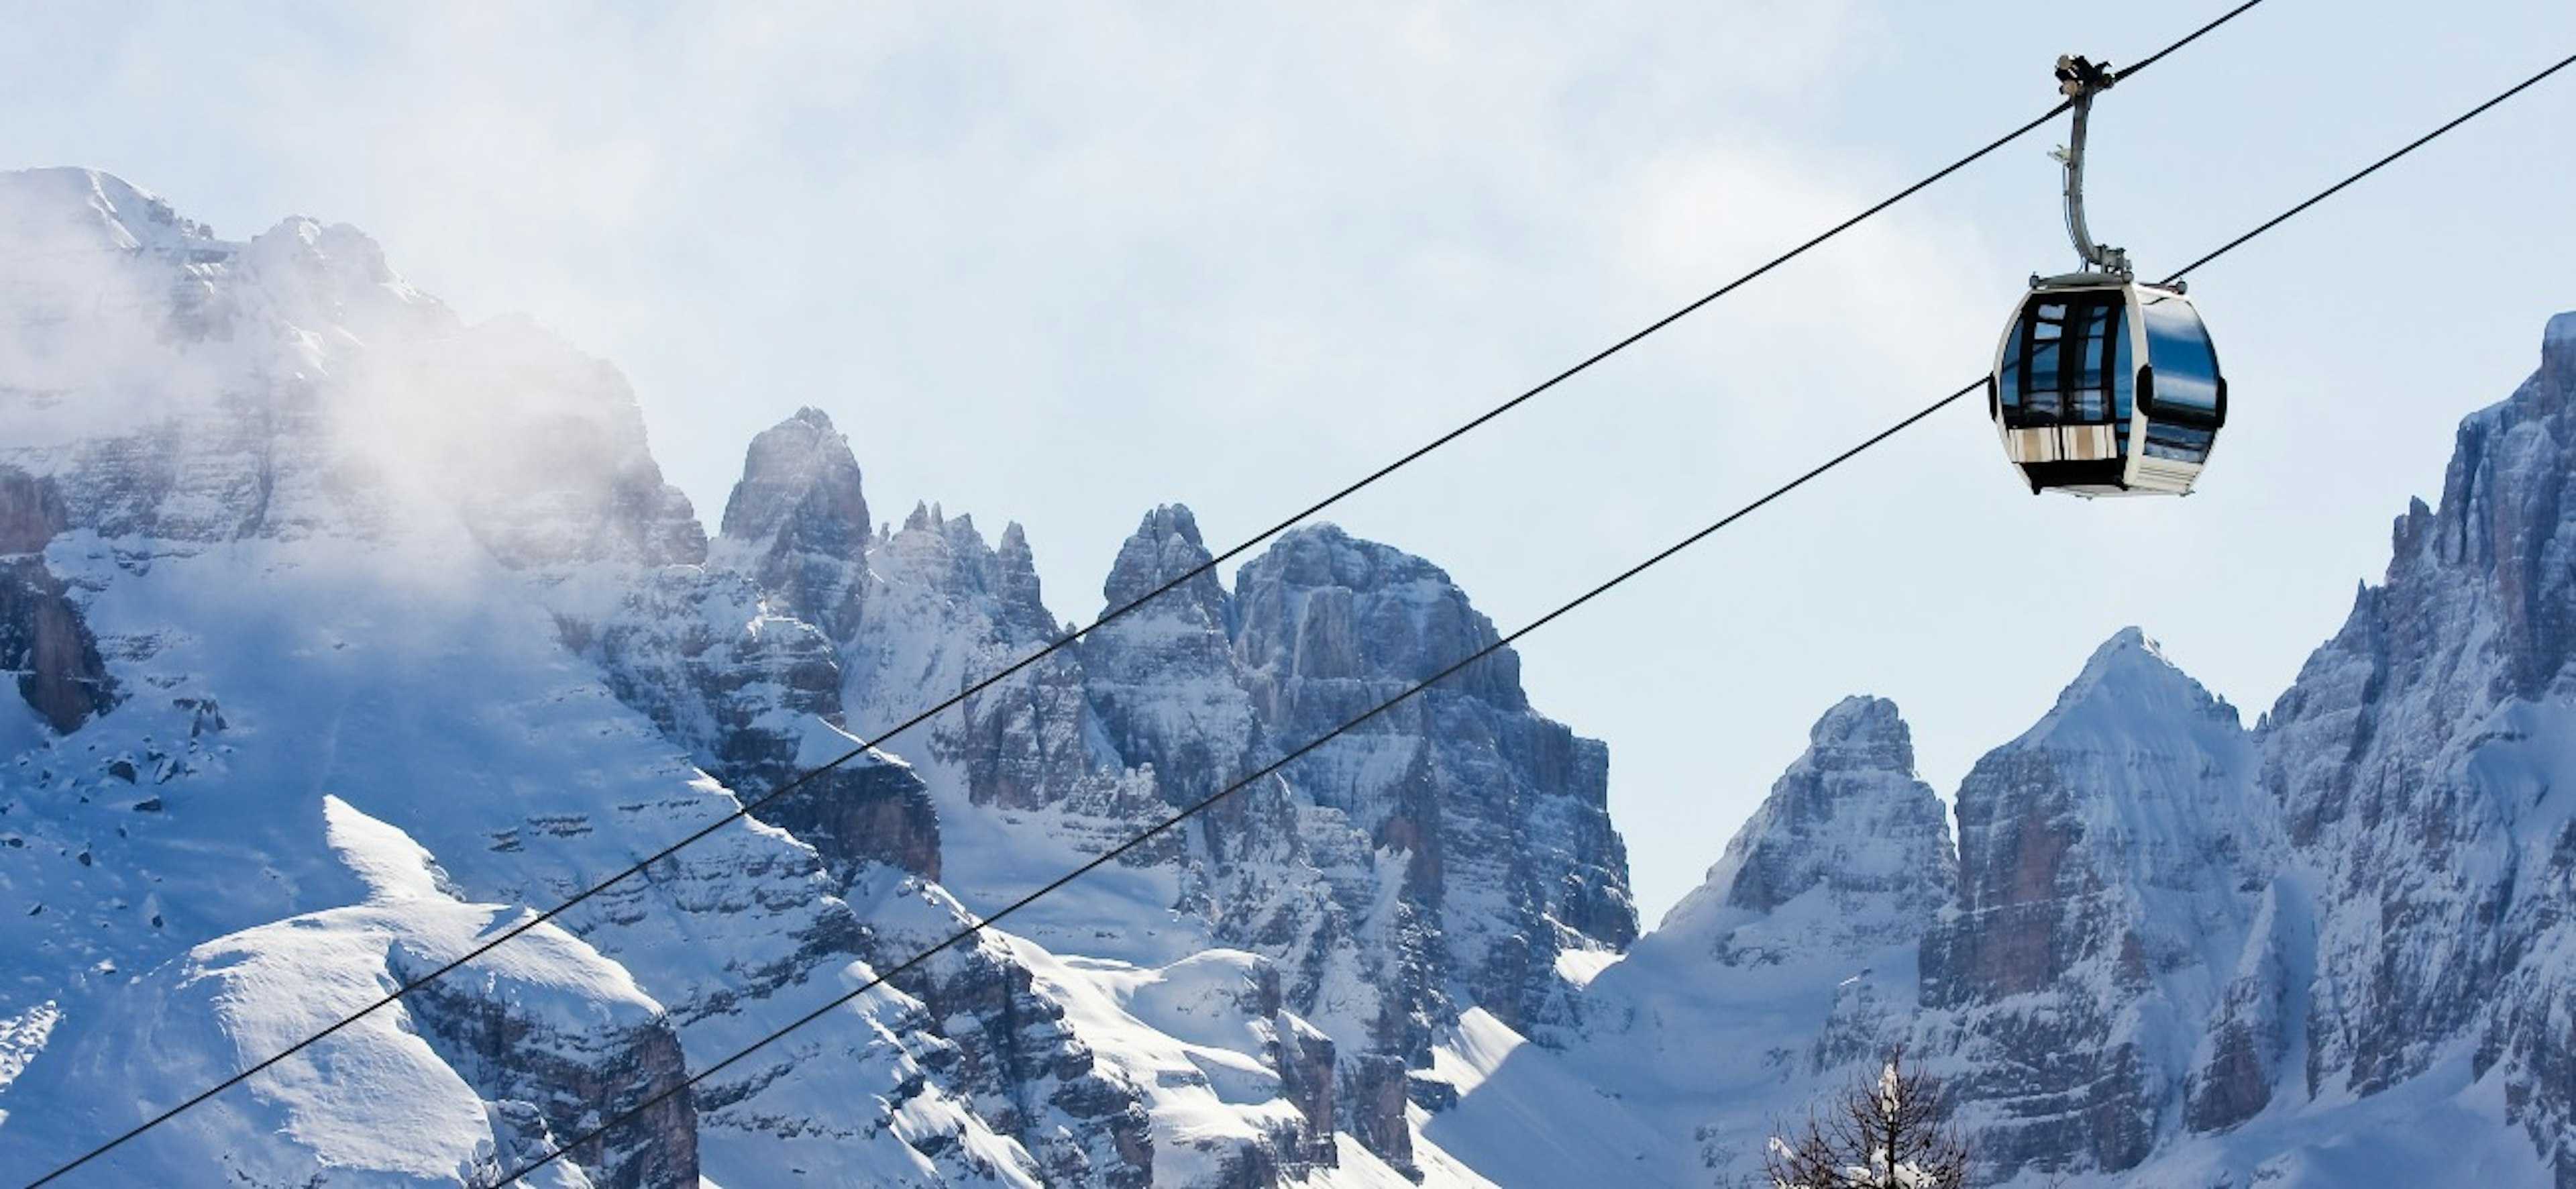 Ski resort Madonna di Campiglio. Italy
